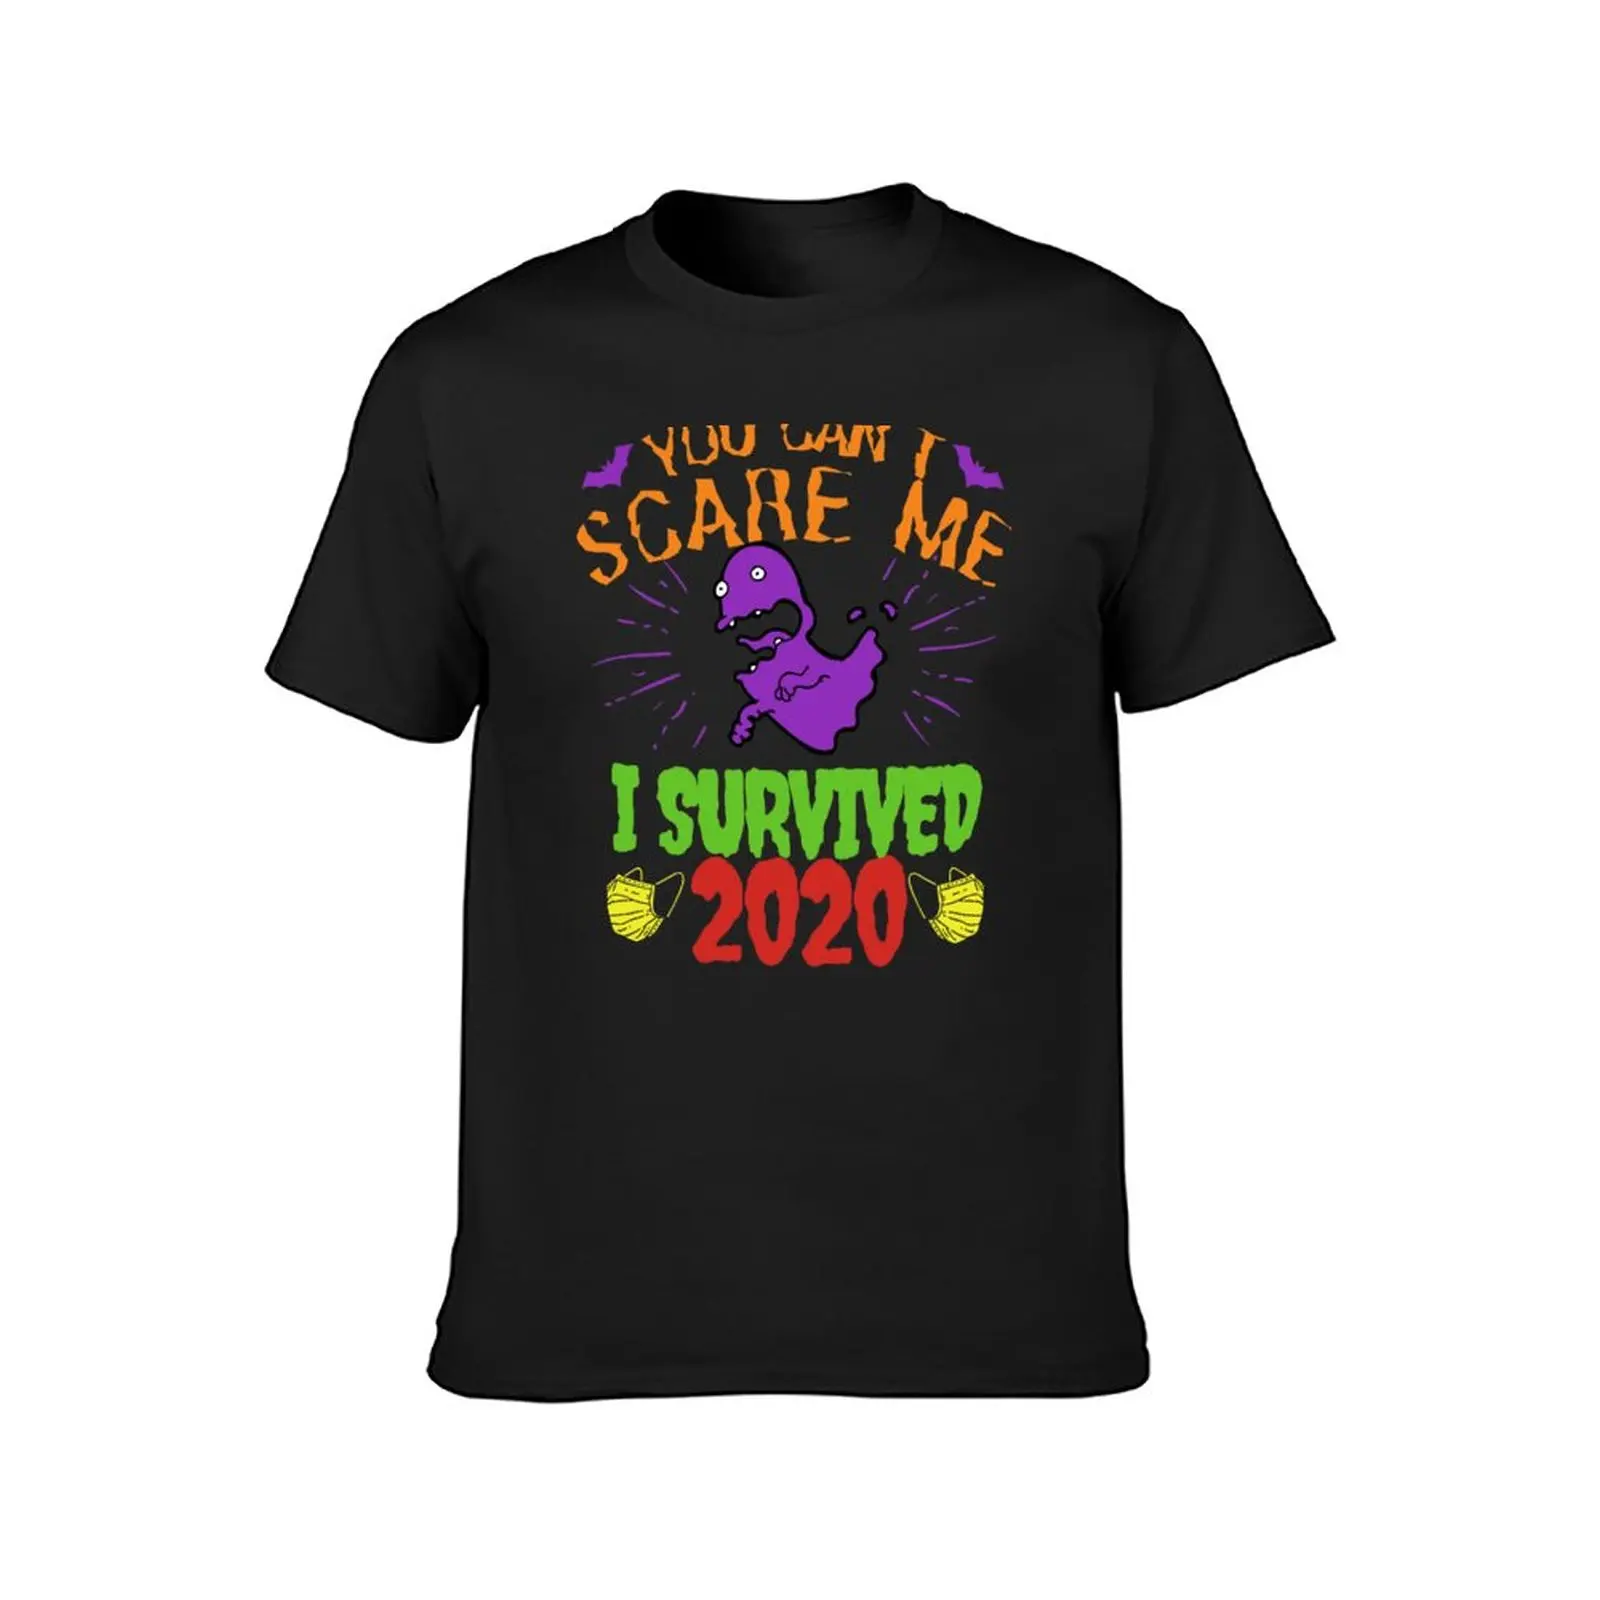 Você não Pode Me Assustar eu Sobrevivi 2020, Halloween Engraçado Design de T-Shirt bonito tops, camisetas divertidas camisetas masculinas